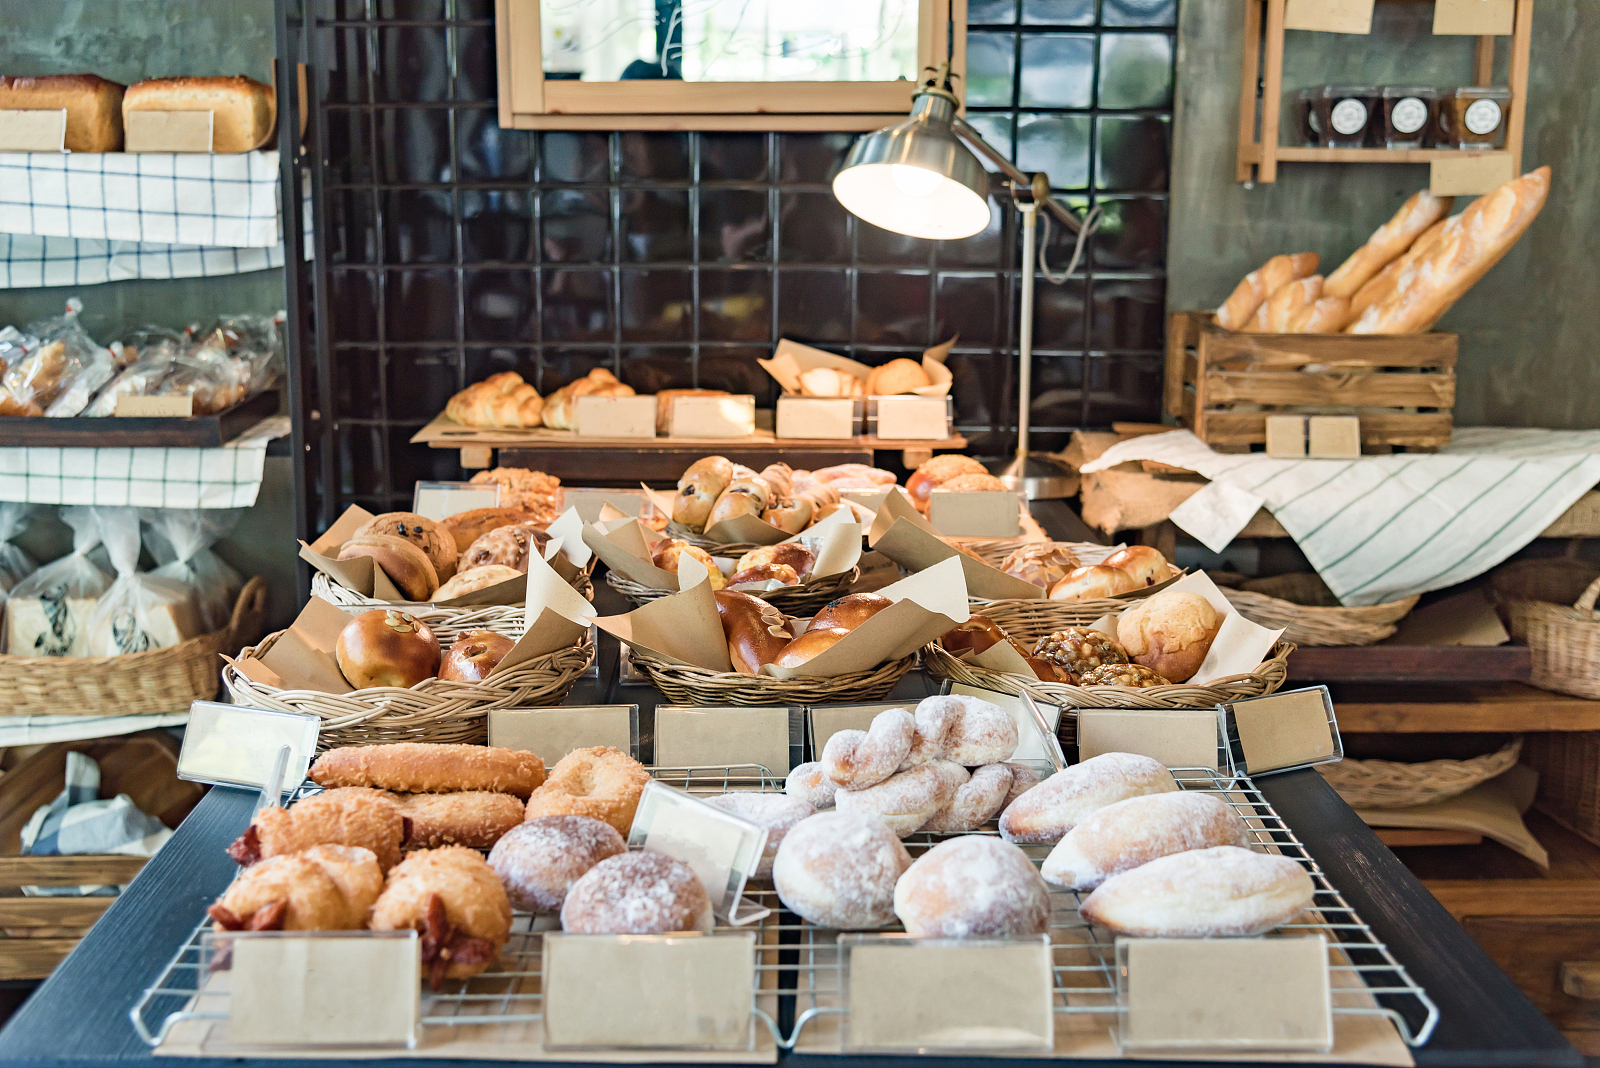 Pelbagai roti bakar segar yang diperbuat daripada bahan oragnik di kedai roti tempatan Tokyo Jepun.